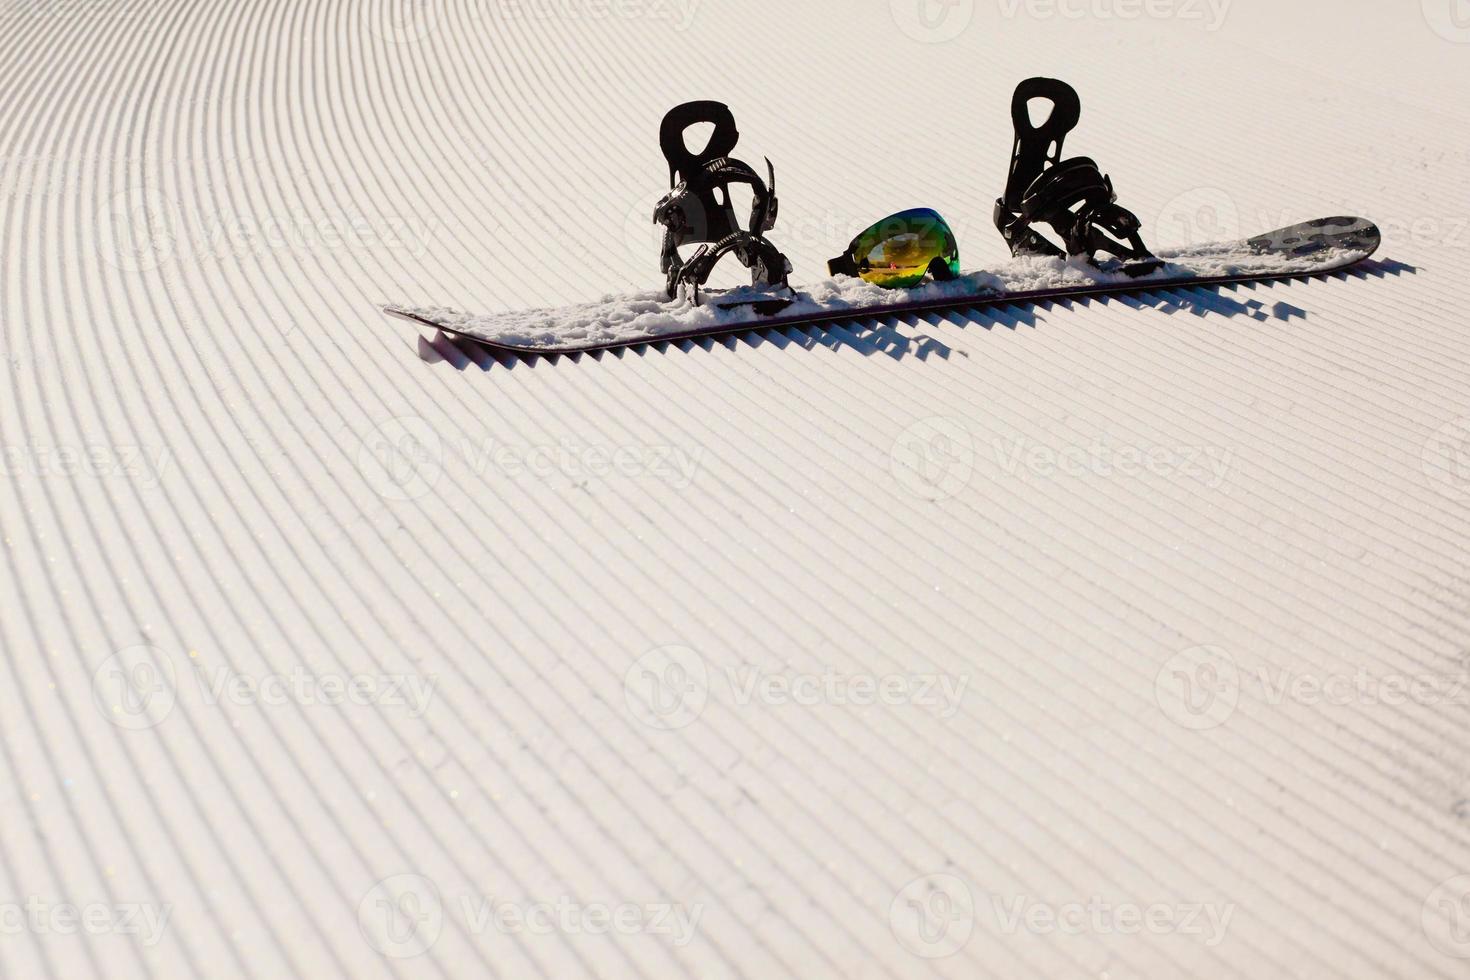 Equipo para hacer snowboard en una nueva nieve preparada. foto